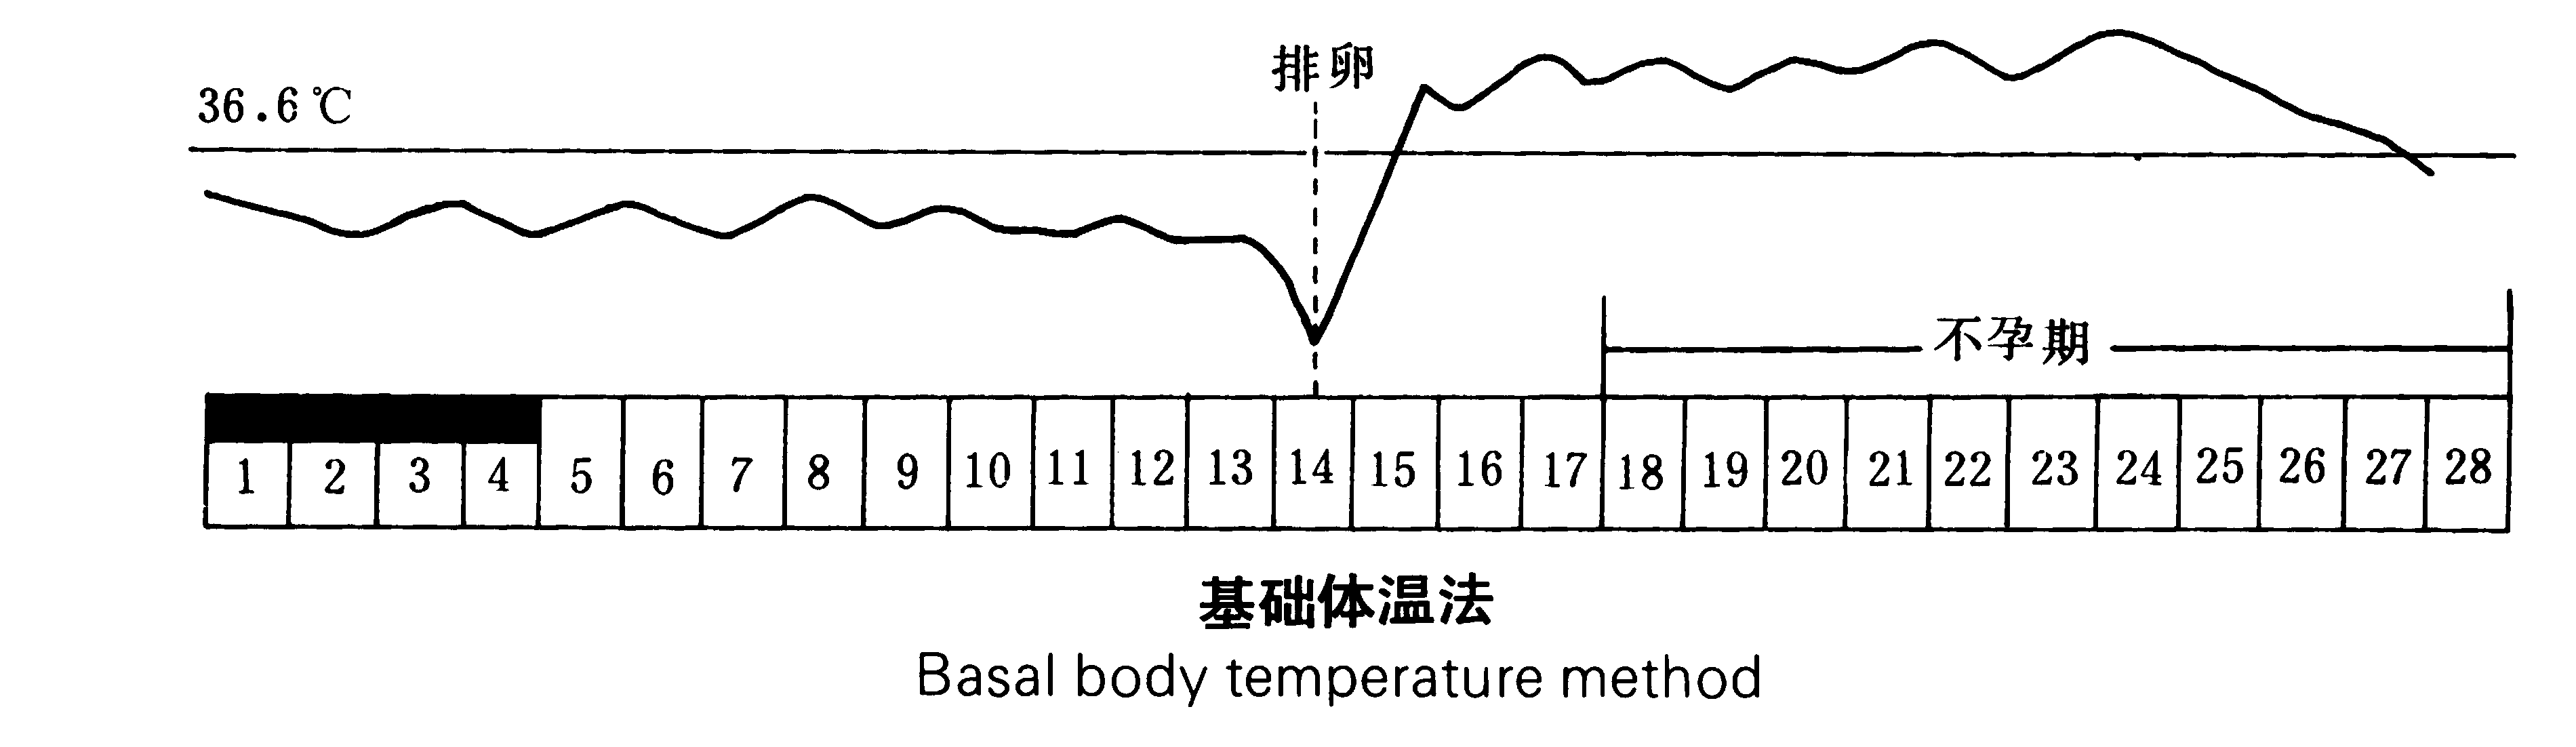 把每天测量到的基础体温记录在一张体温记录单上,并连成曲线,就可以